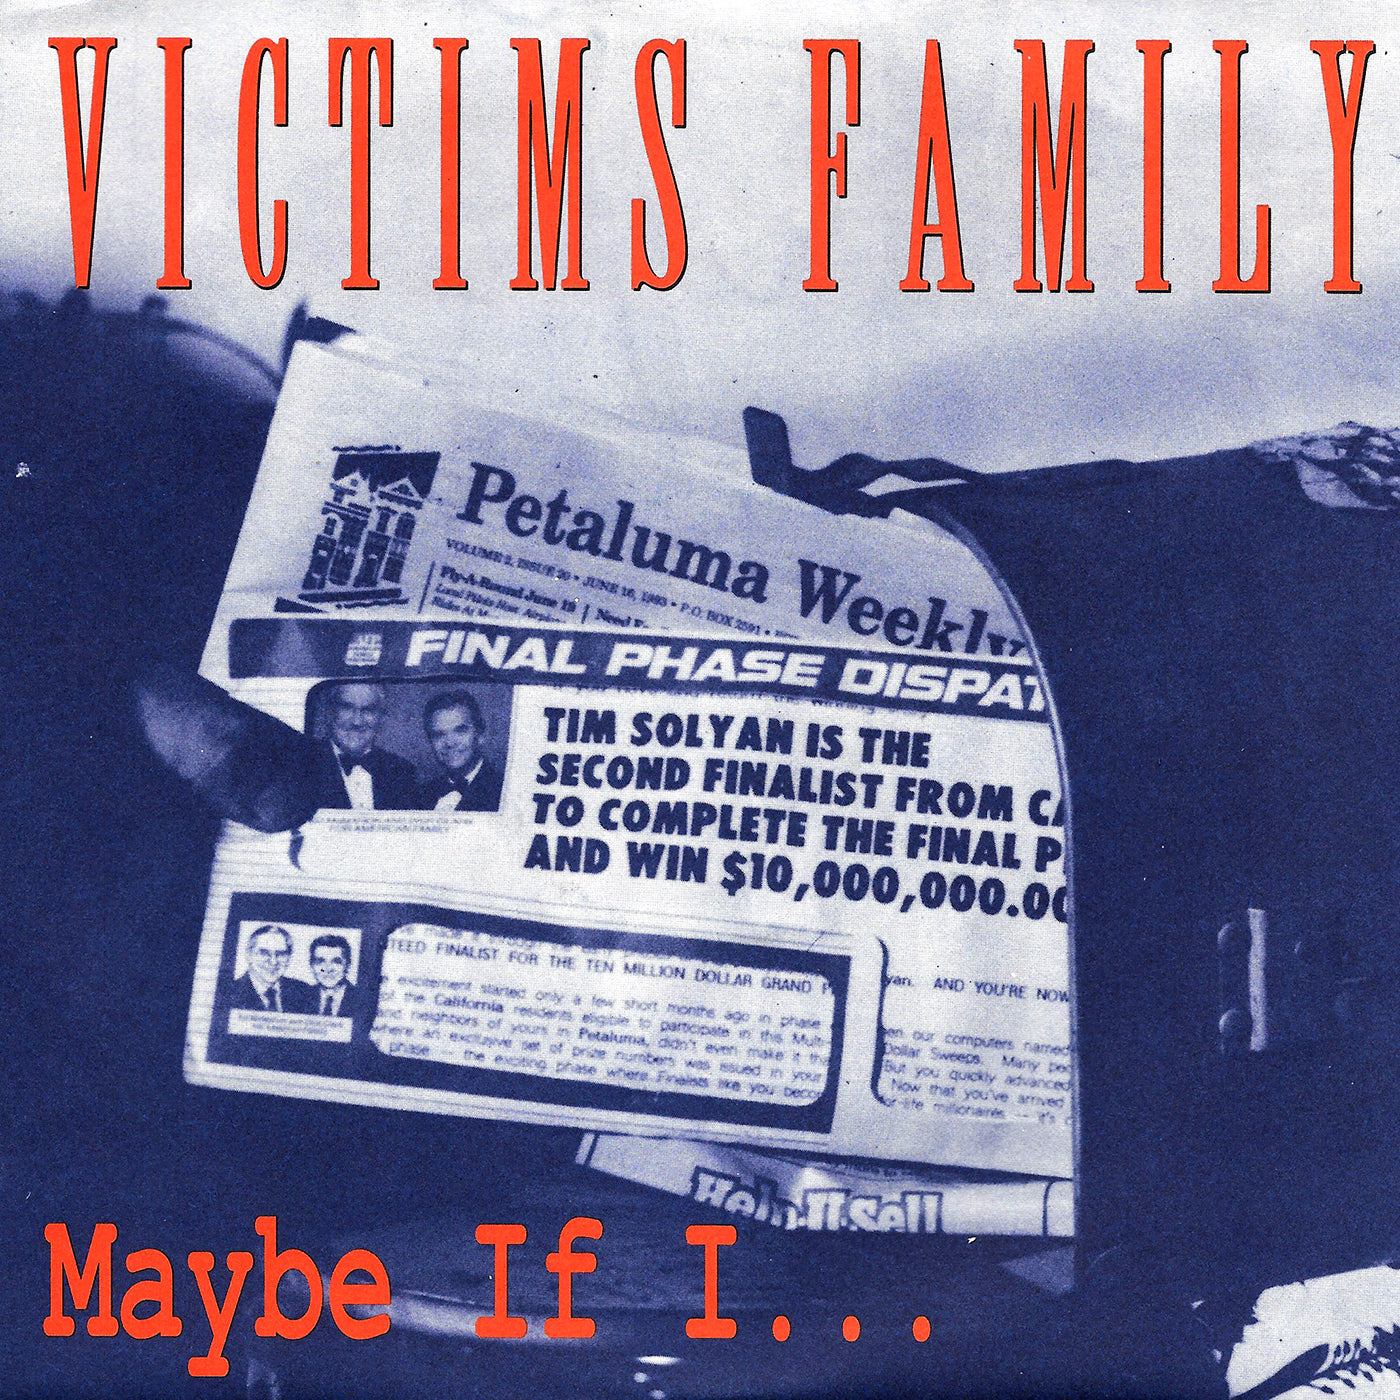 v129 - Victims Family - "Maybe If I..."